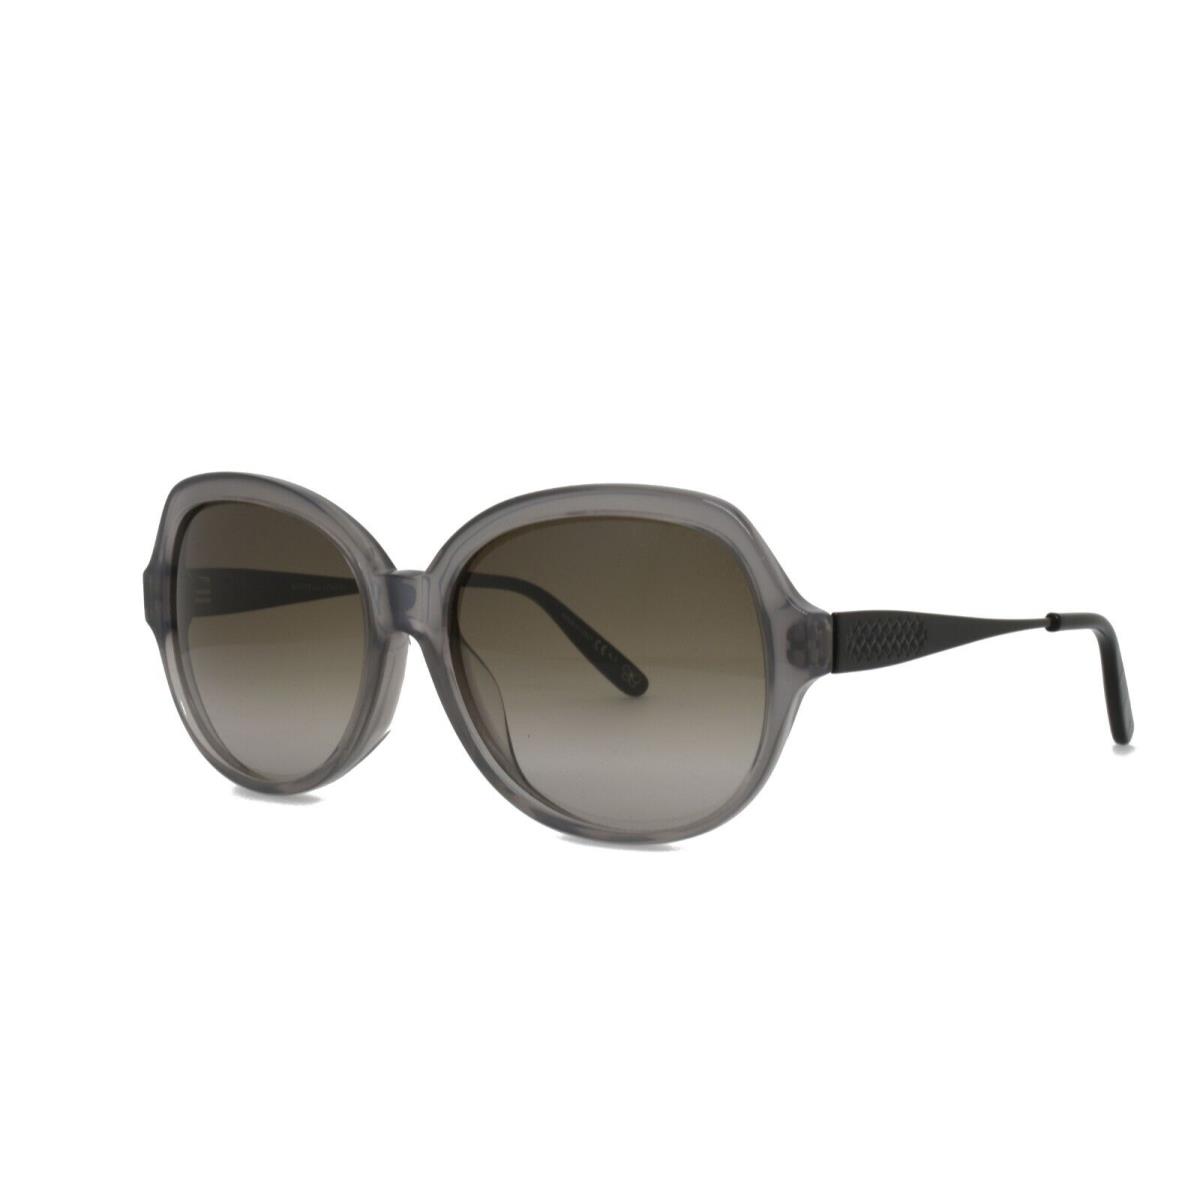 Bottega Veneta 254FS F26 HA 58-16-140 Gray Black Display Sunglasses